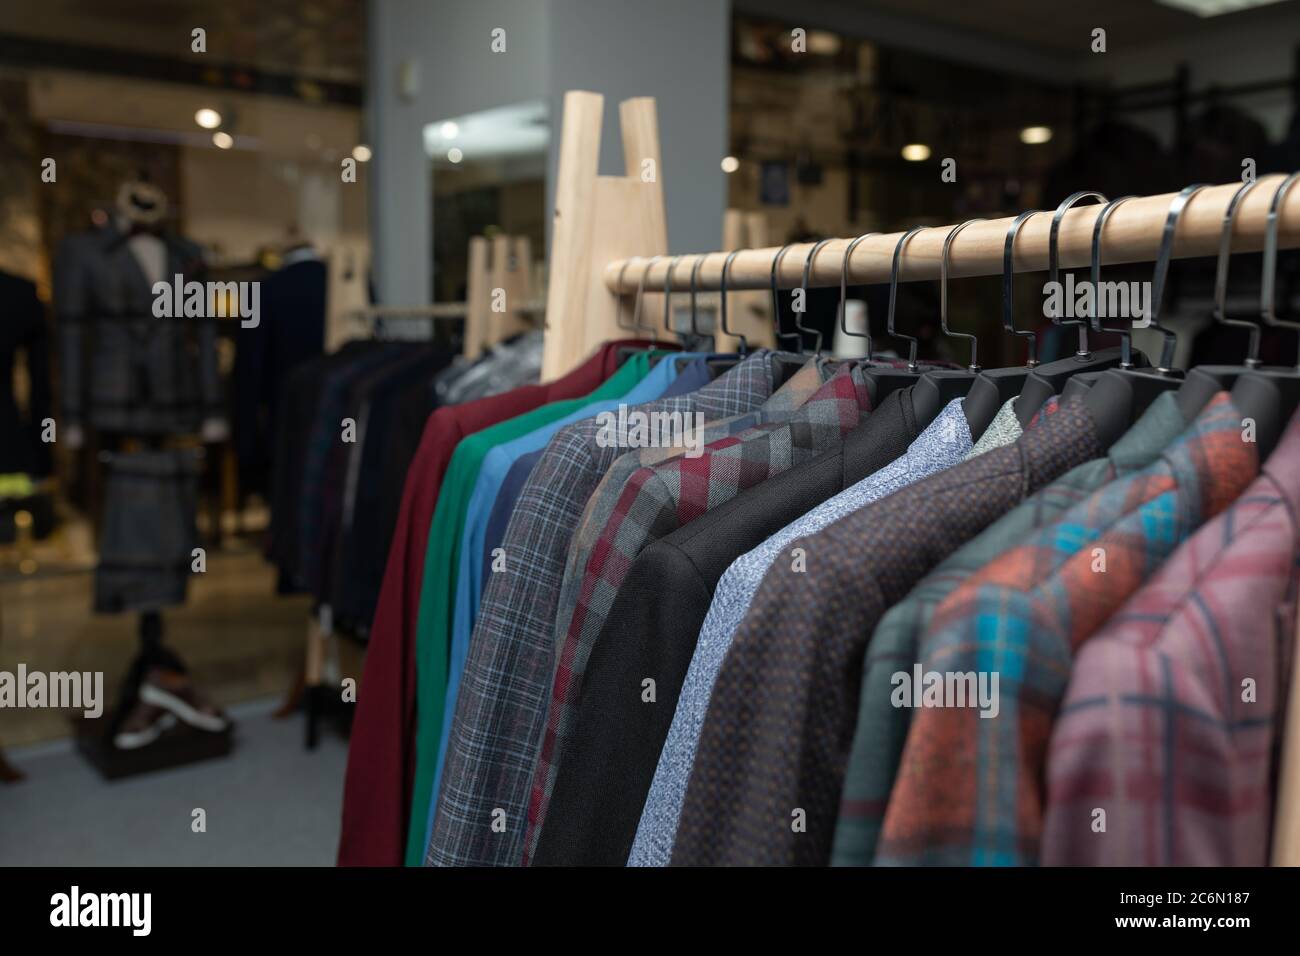 Teure Herrenmode speichern. Eine Reihe von Jacken auf Kleiderbügel. Shoppen  Verkauf Hintergrund Thema. Kleidung auf Kleiderbügel im Geschäft  Stockfotografie - Alamy